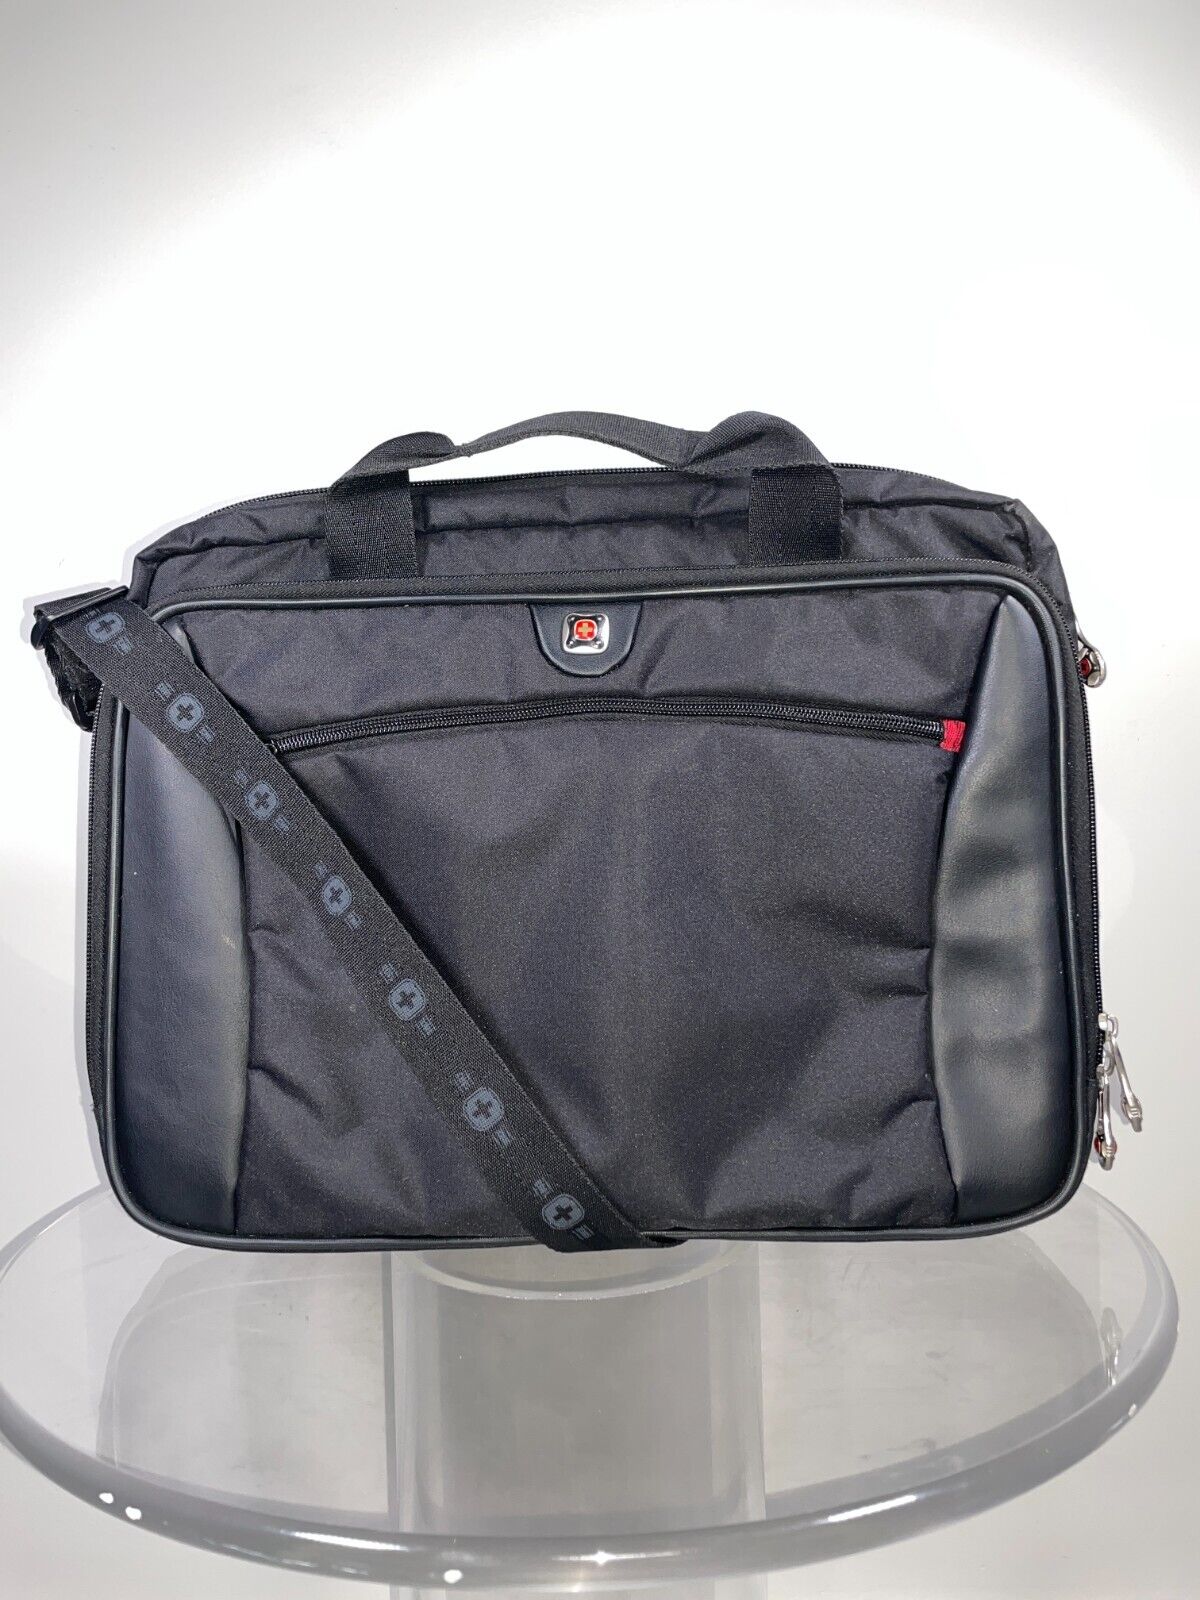 Swiss Gear Black Messenger Bag Laptop Shoulder Strap Plus Handles 3 Compartments